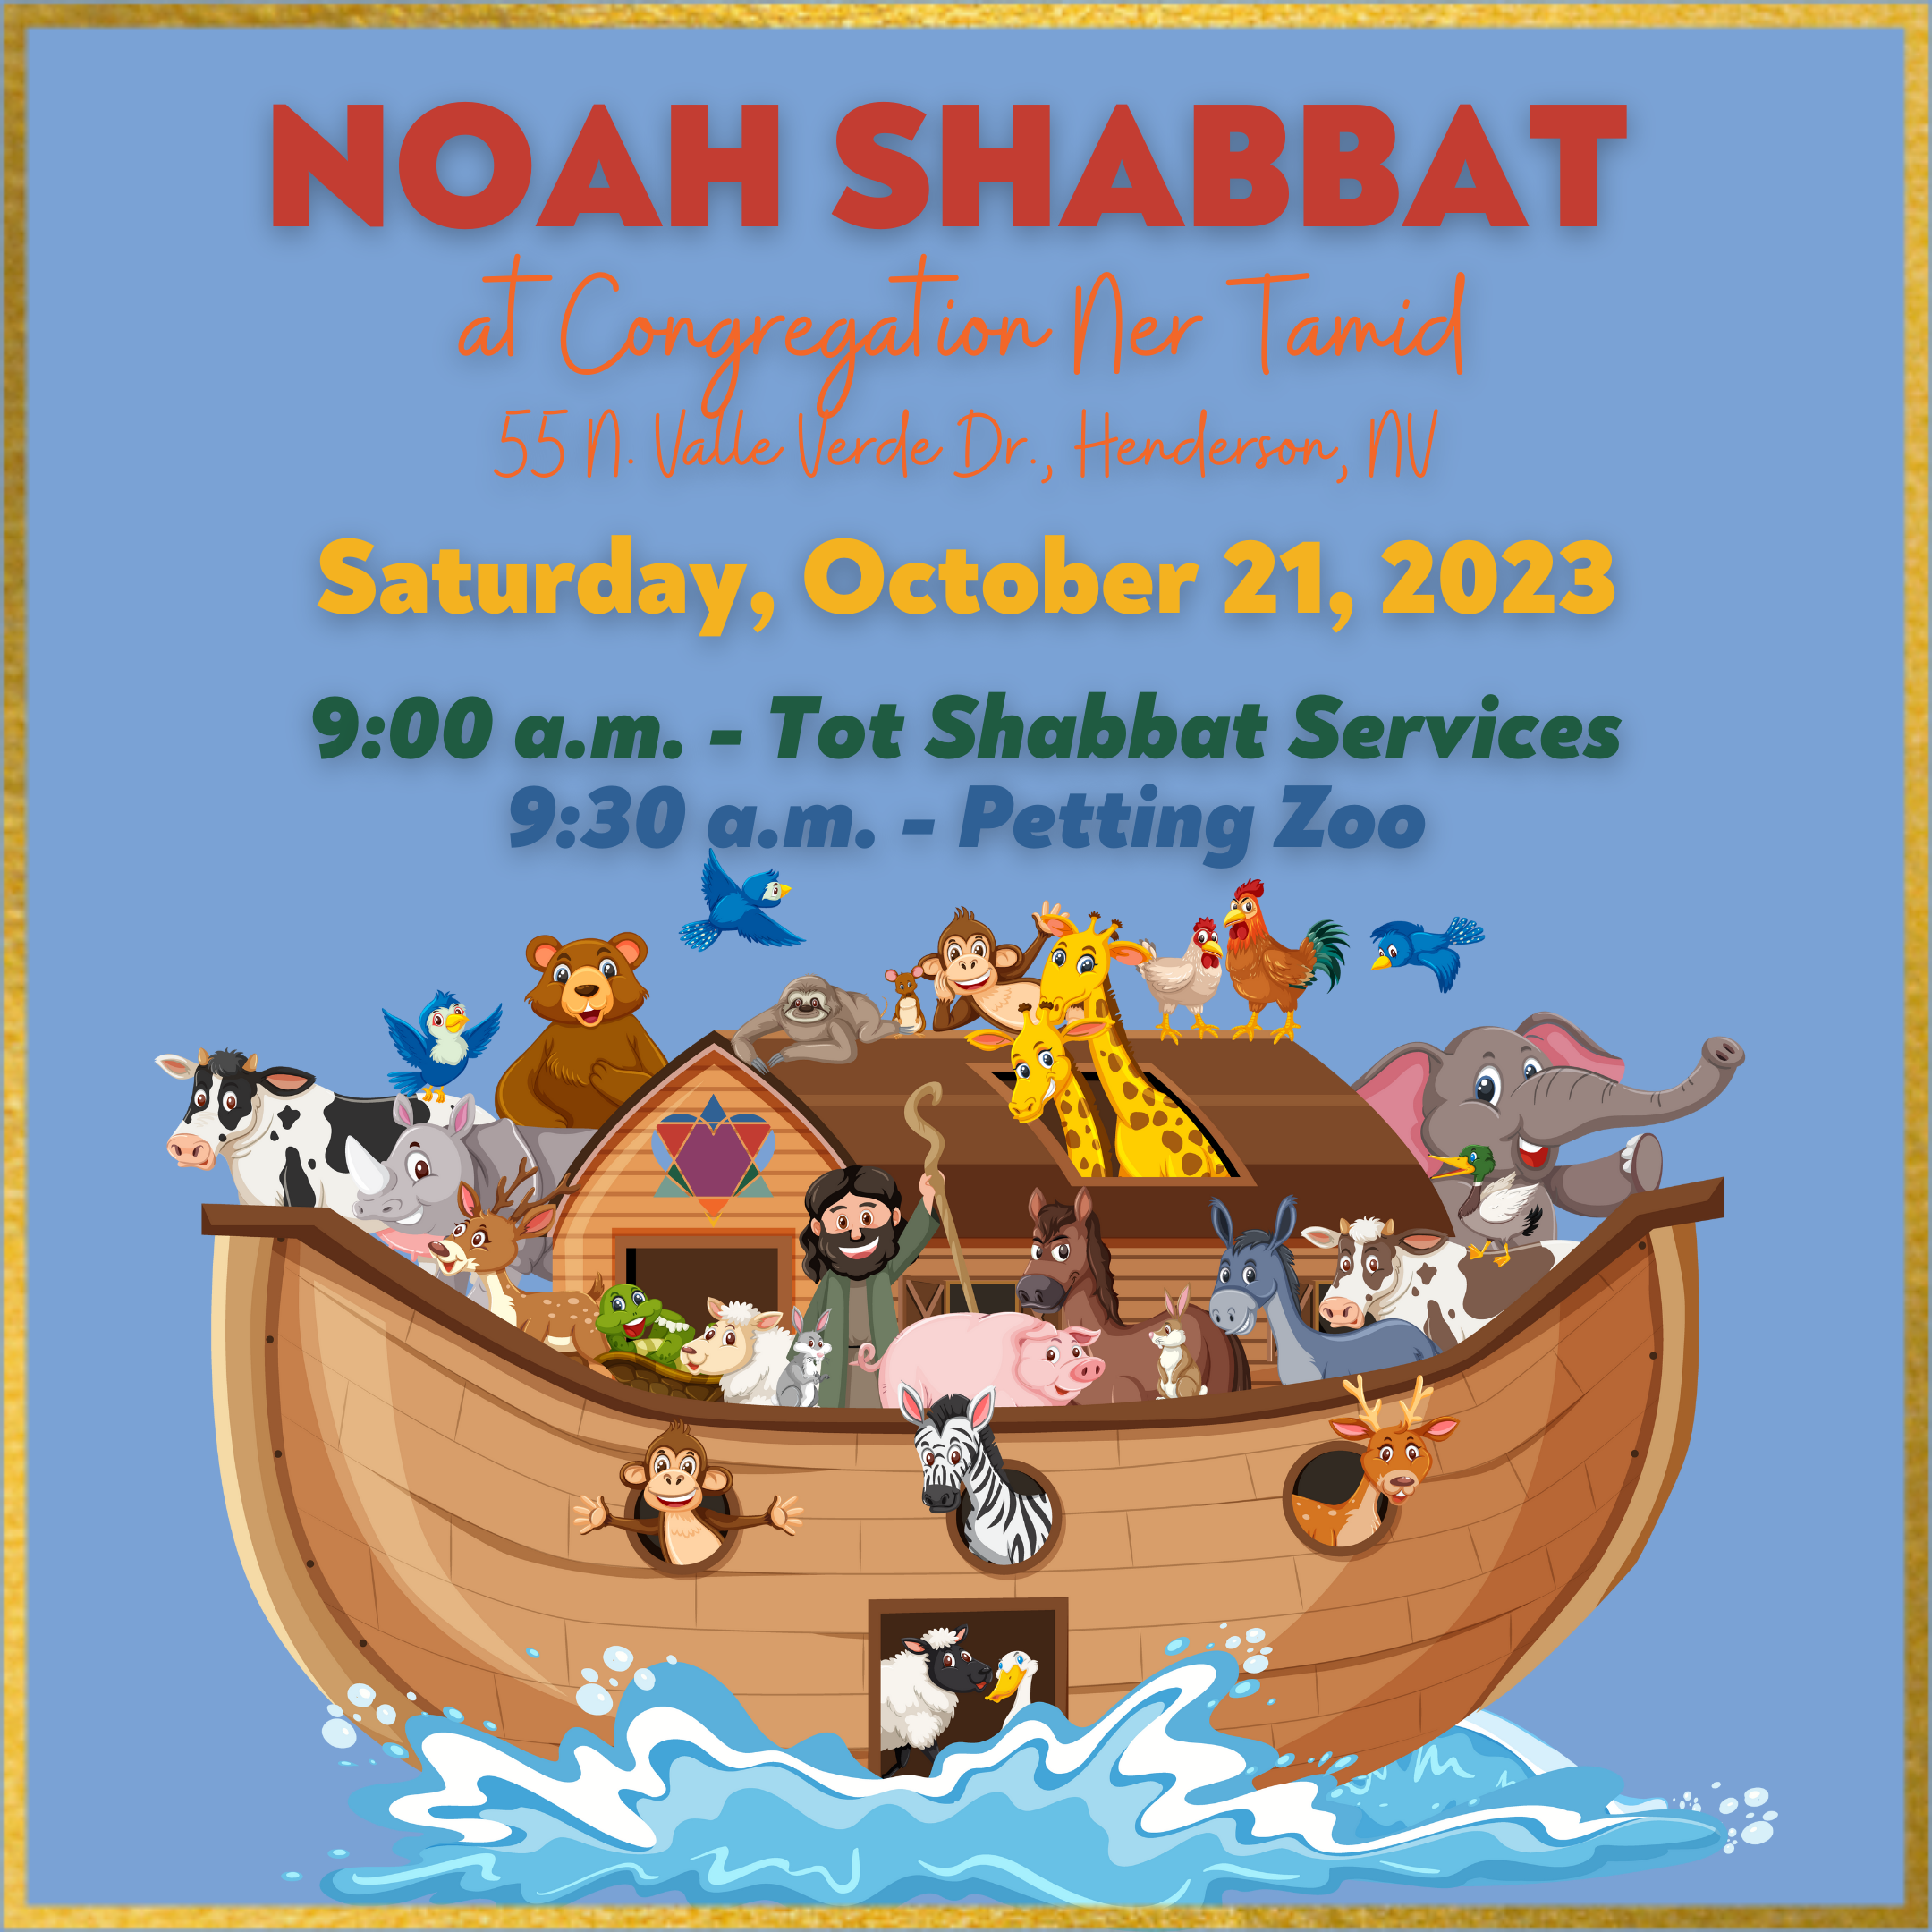 NOAH SHABBAT AND PETTING ZOO